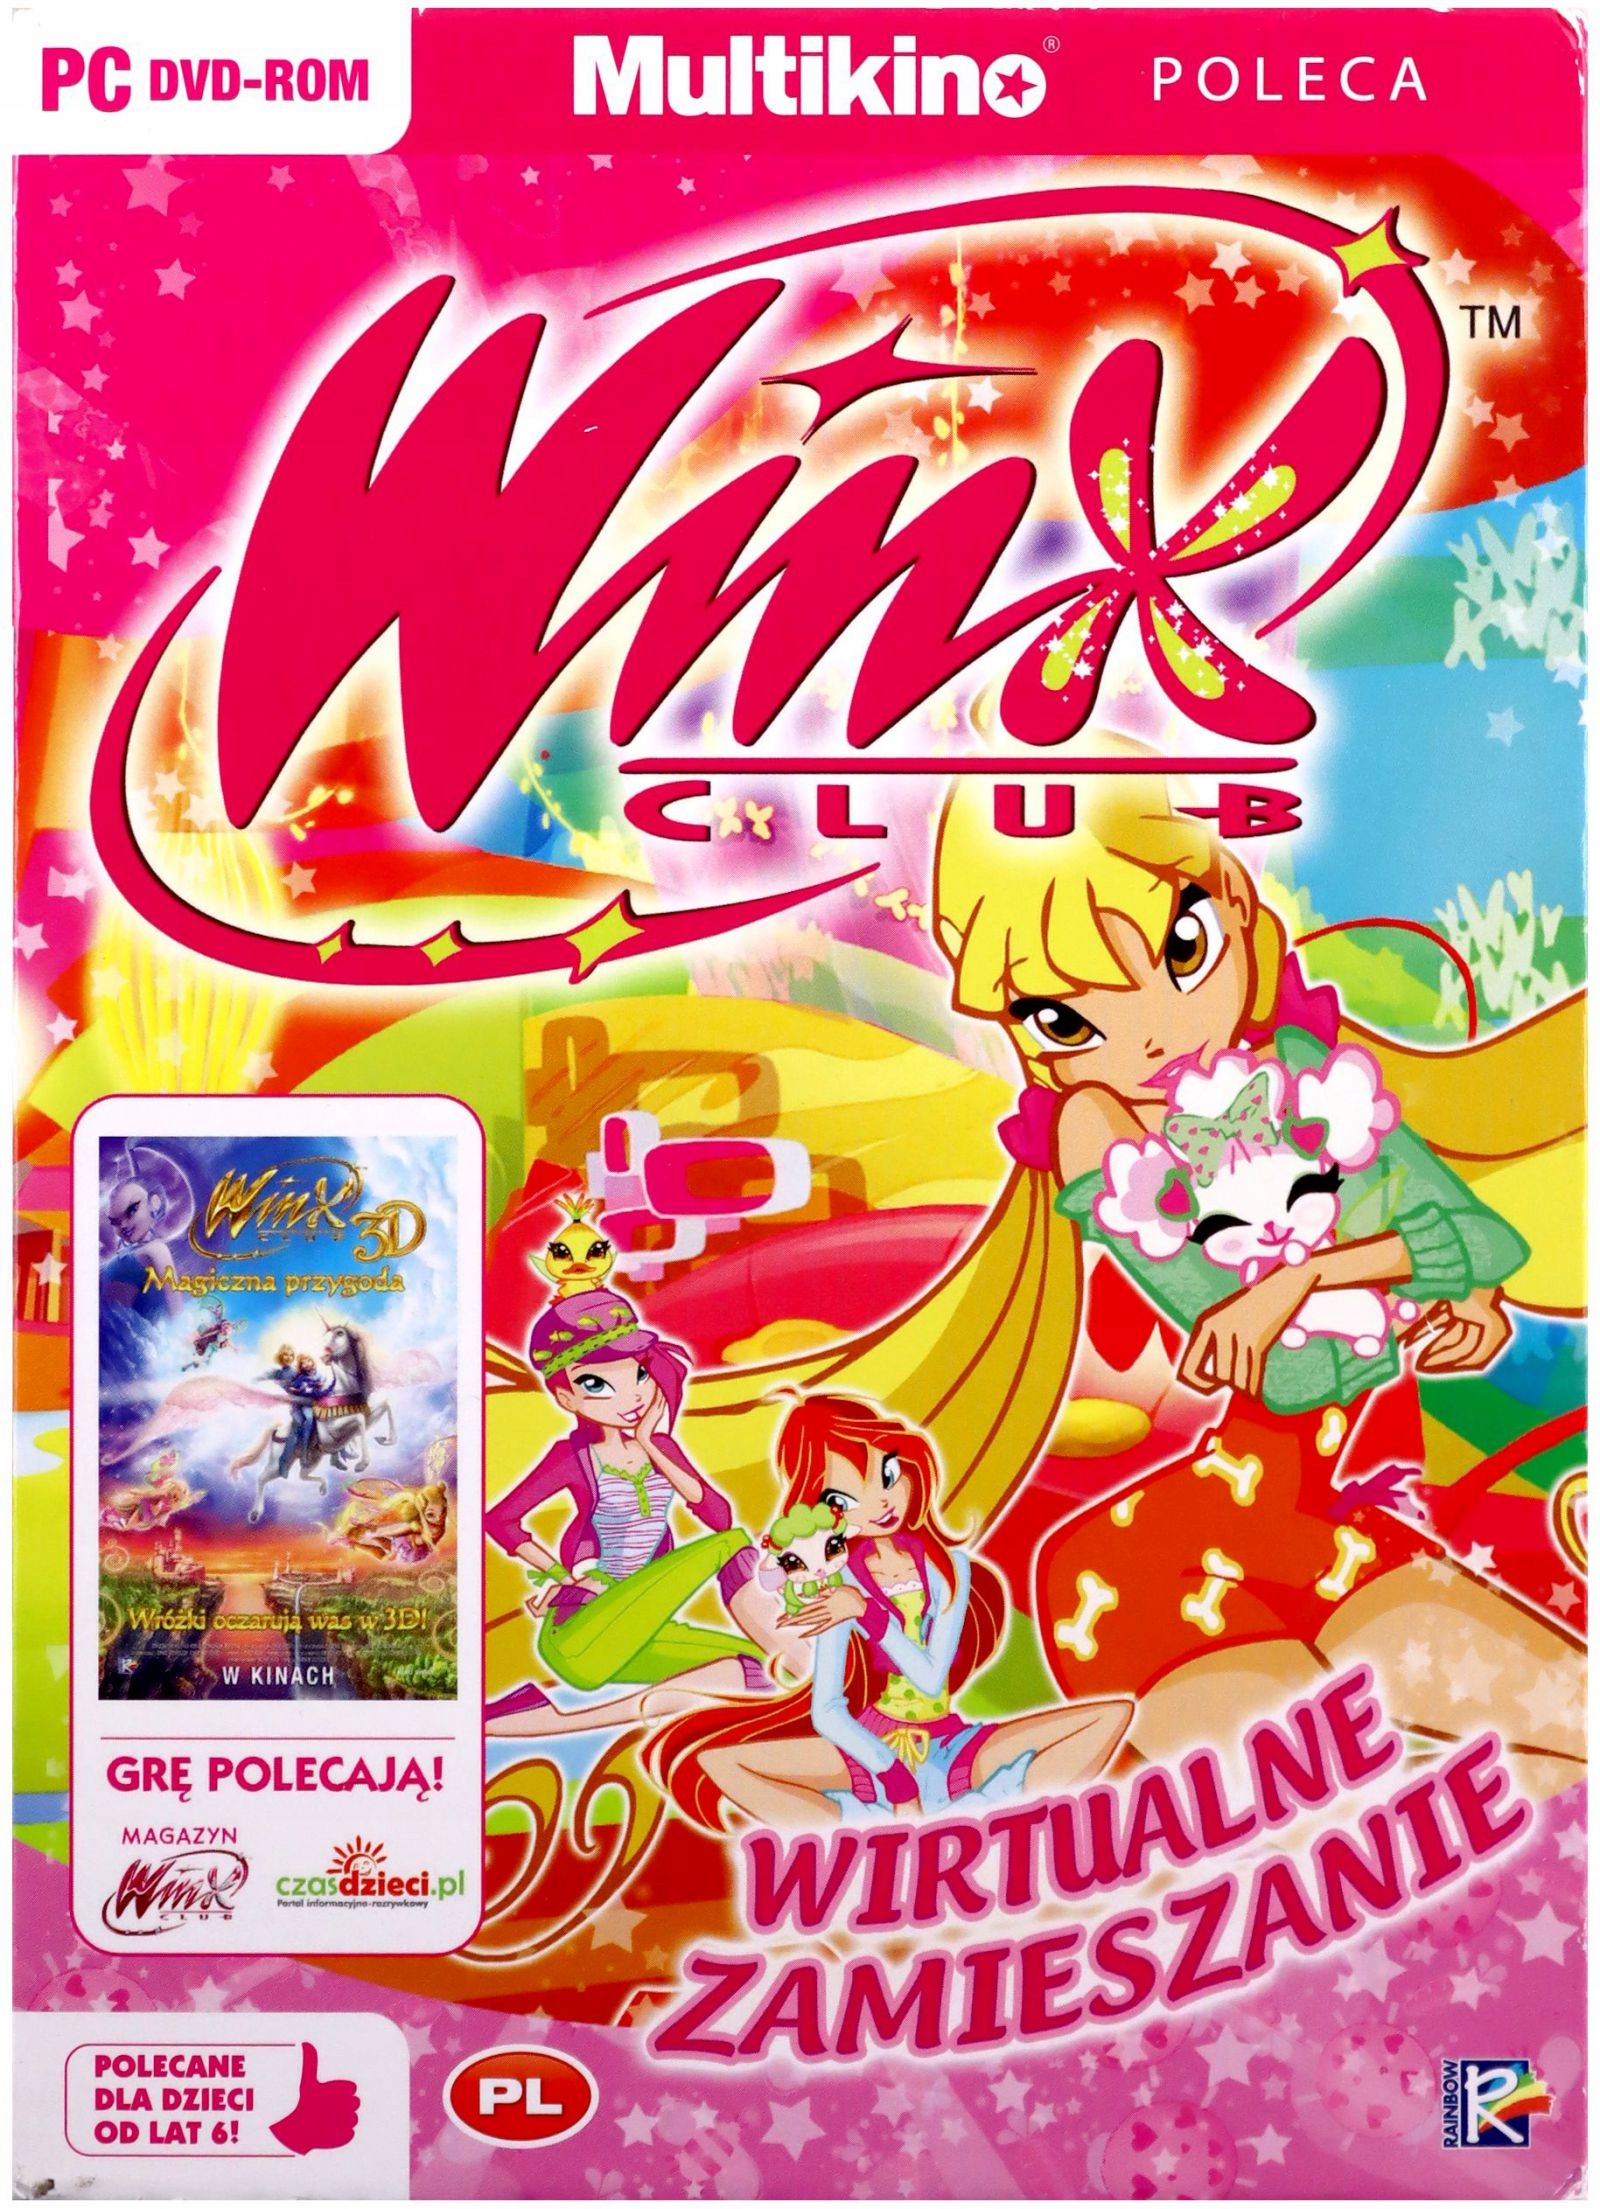 WINX CLUB: виртуальная путаница [PC Game] минимальное количество игроков 1